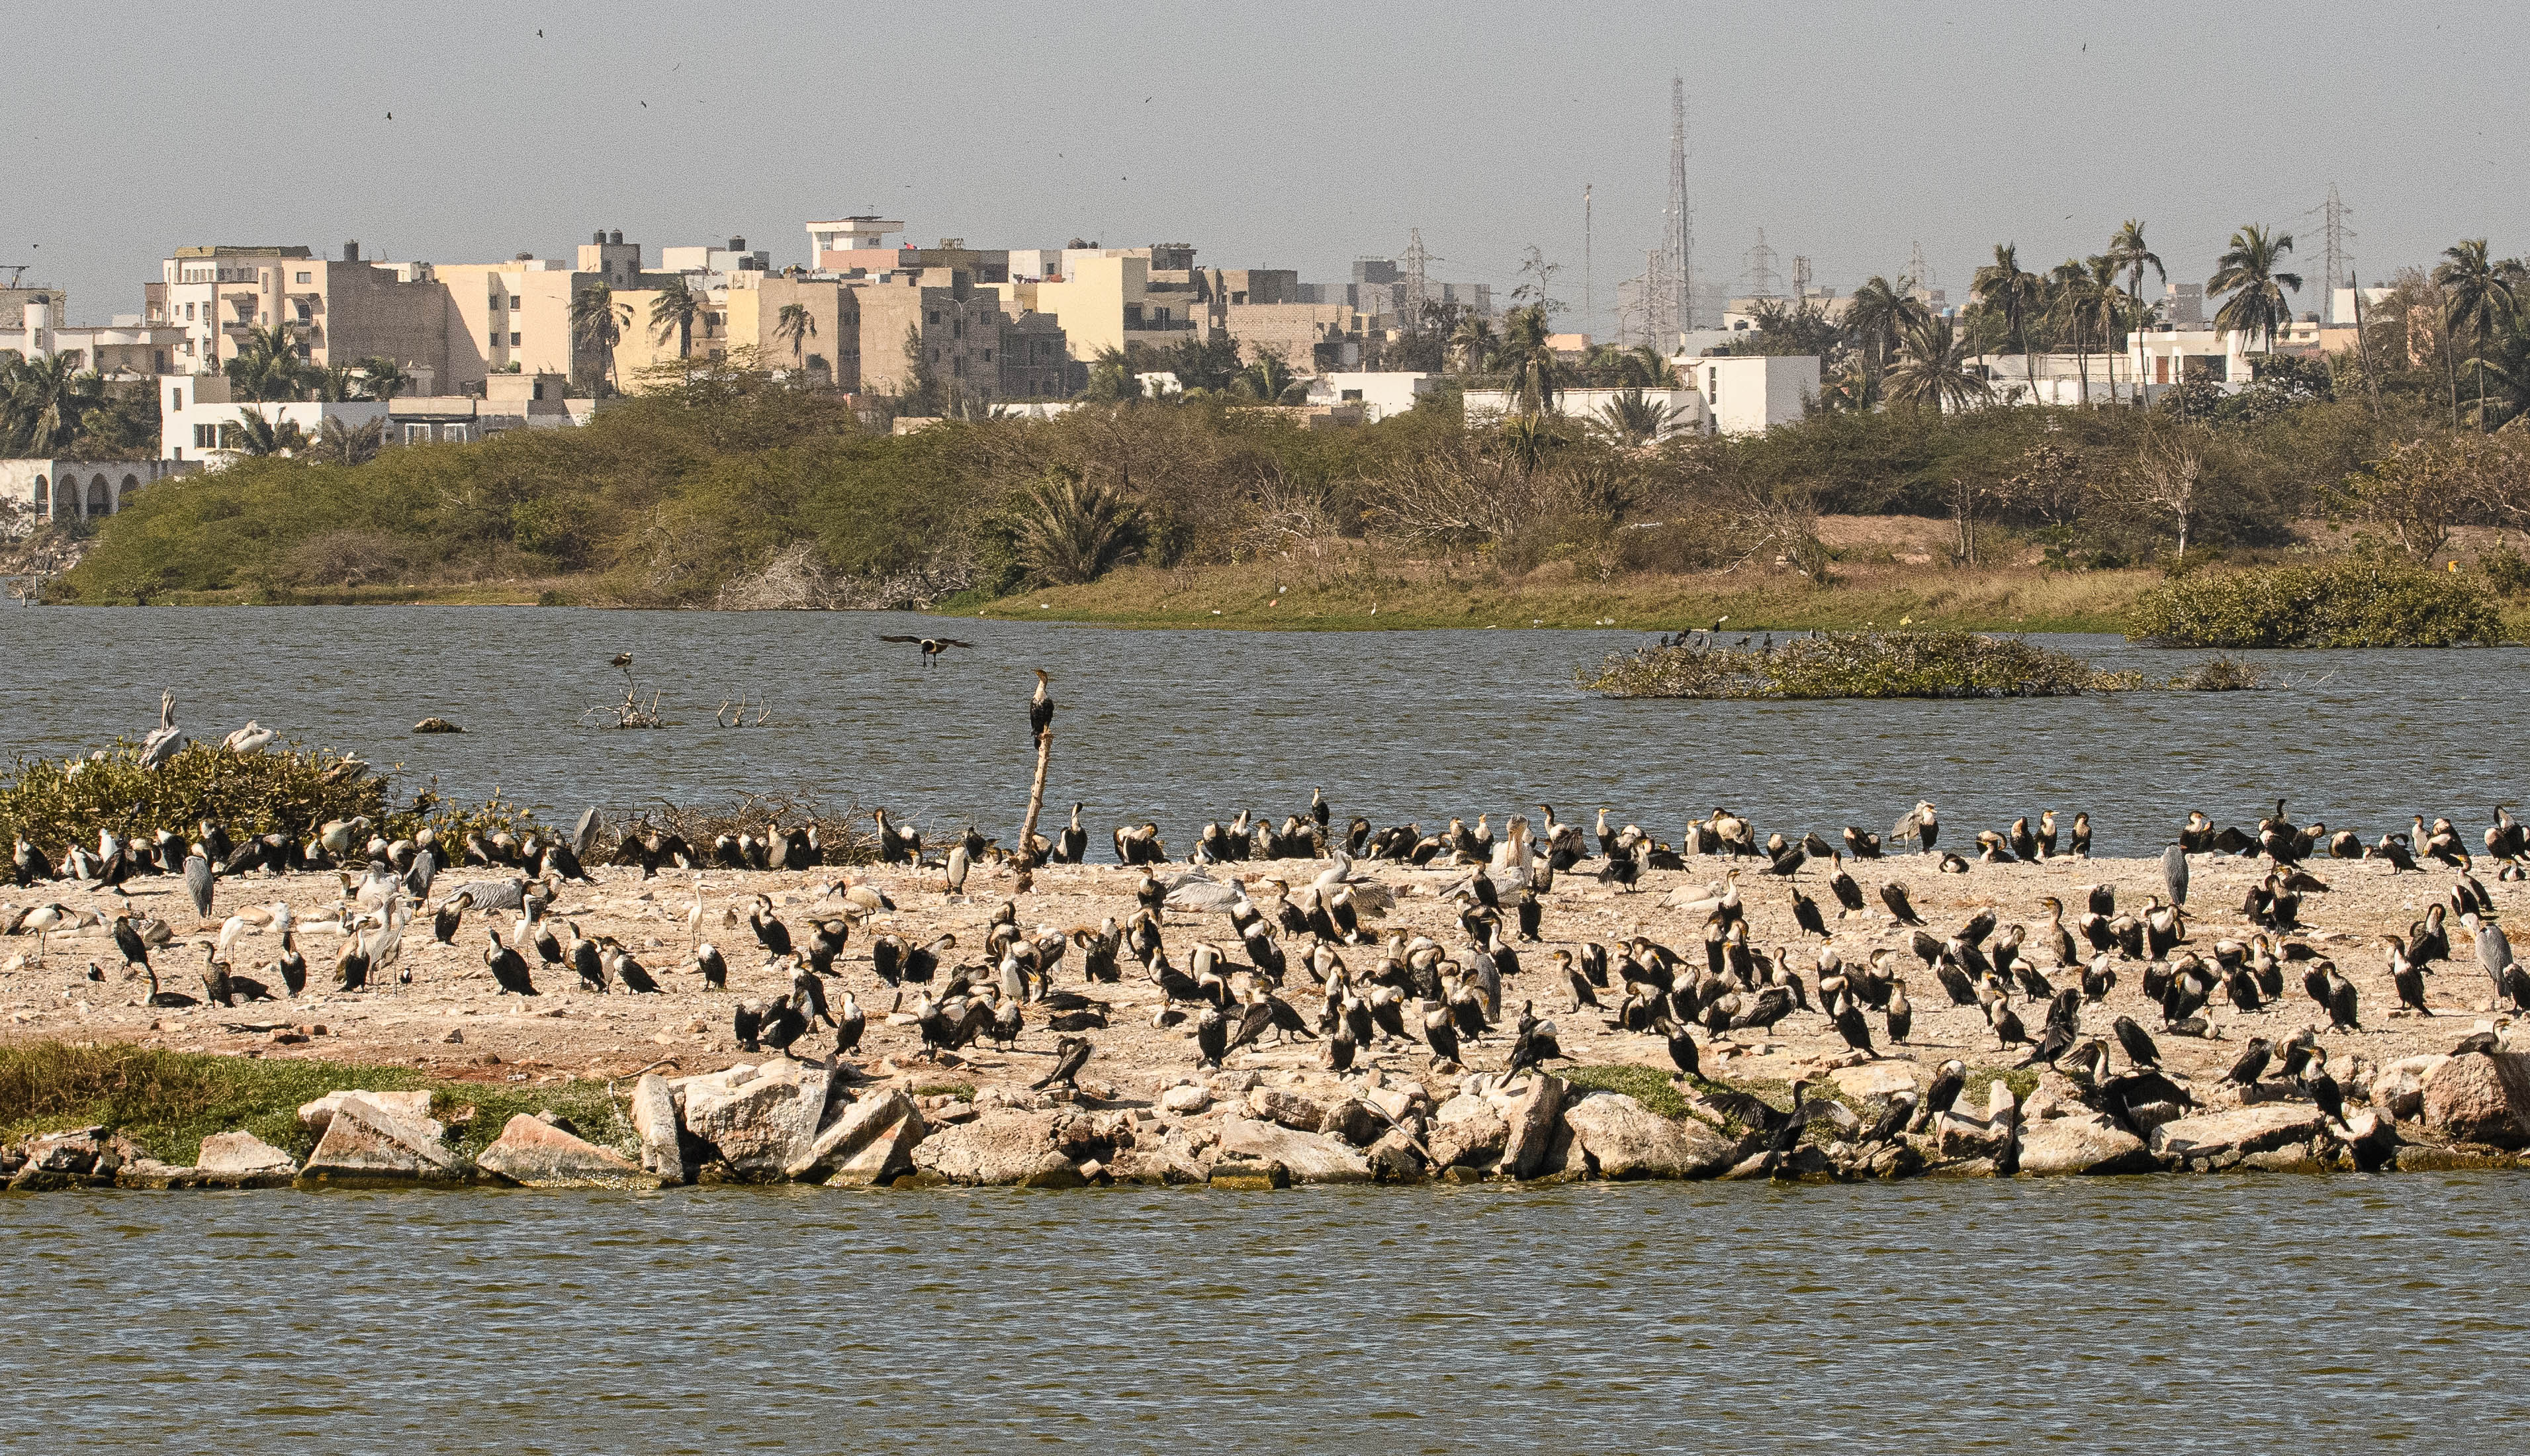 Cormorans à poitrine blanche (White-breasted cormorants, Phalacocrorax lucidus) se réchauffant sous le soleil matinal, Technopole de Pikine, Dakar, Sénégal.